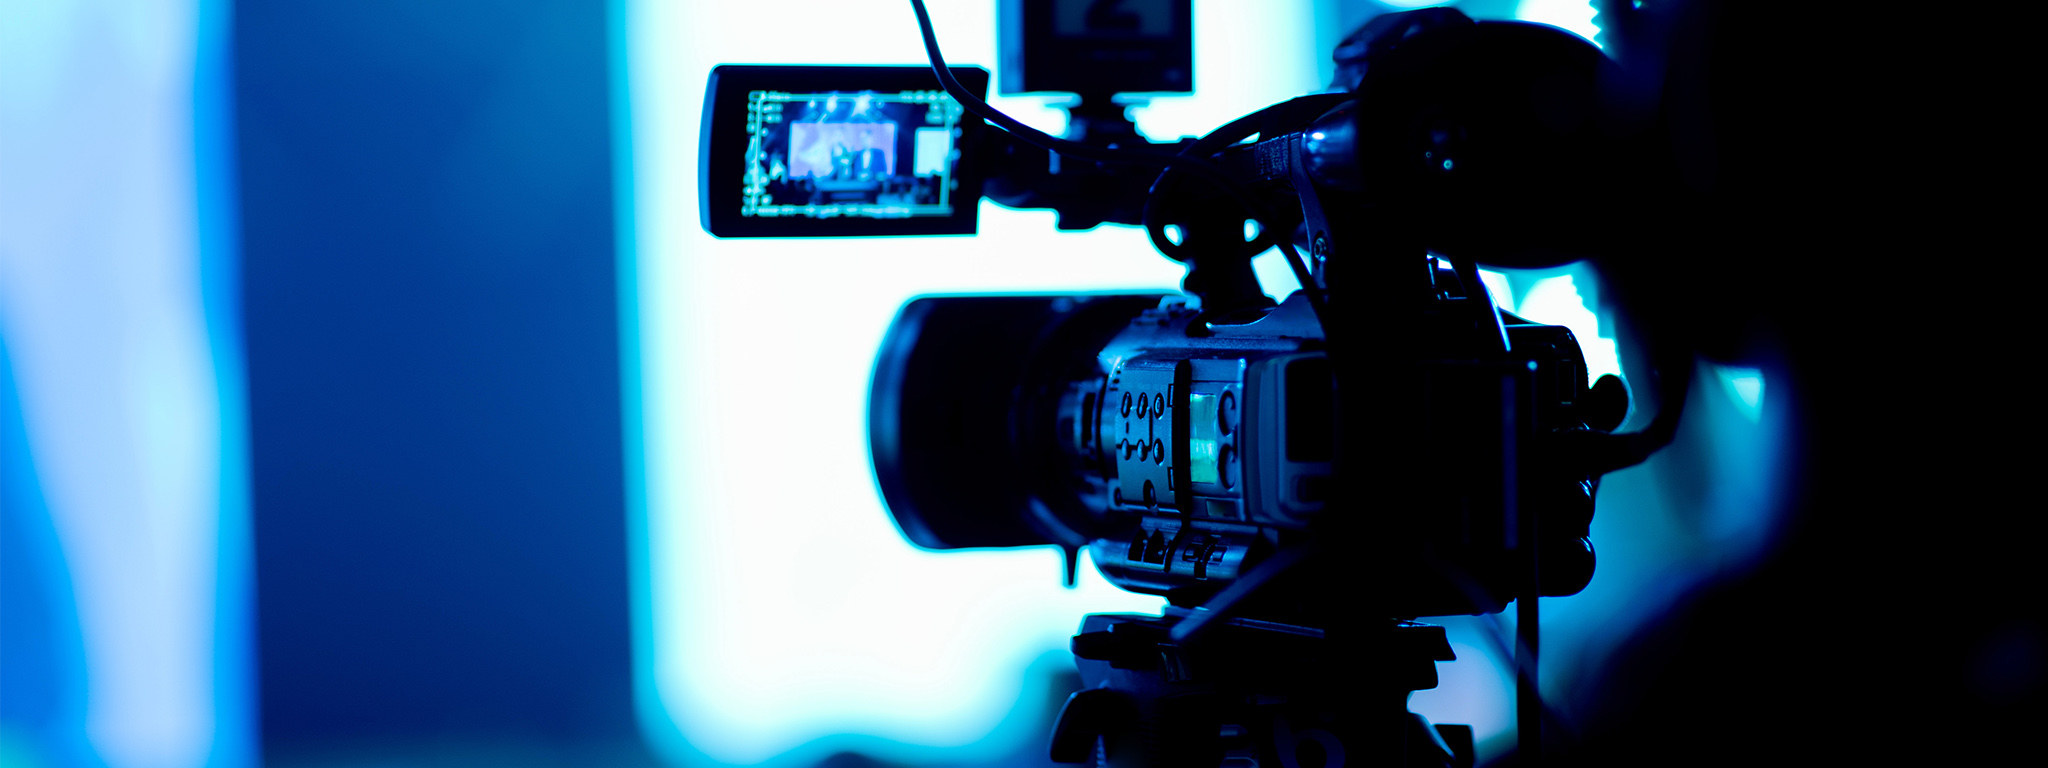 Un vidéaste examine des séquences sur une caméra vidéo avec plusieurs accessoires